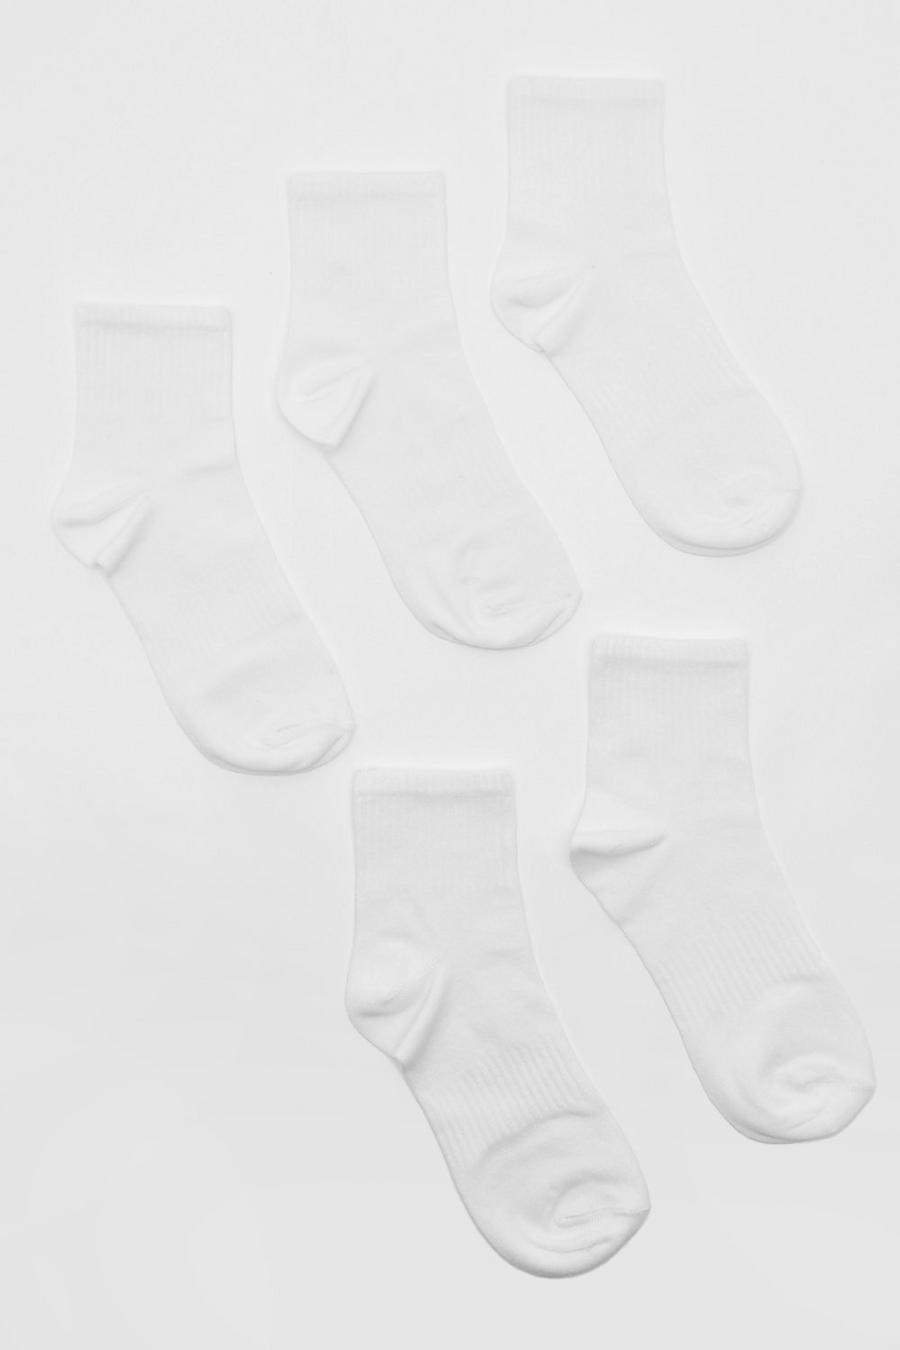 Calzini sportivi alla caviglia bianchi in tinta unita - set di 5 paia, White blanco